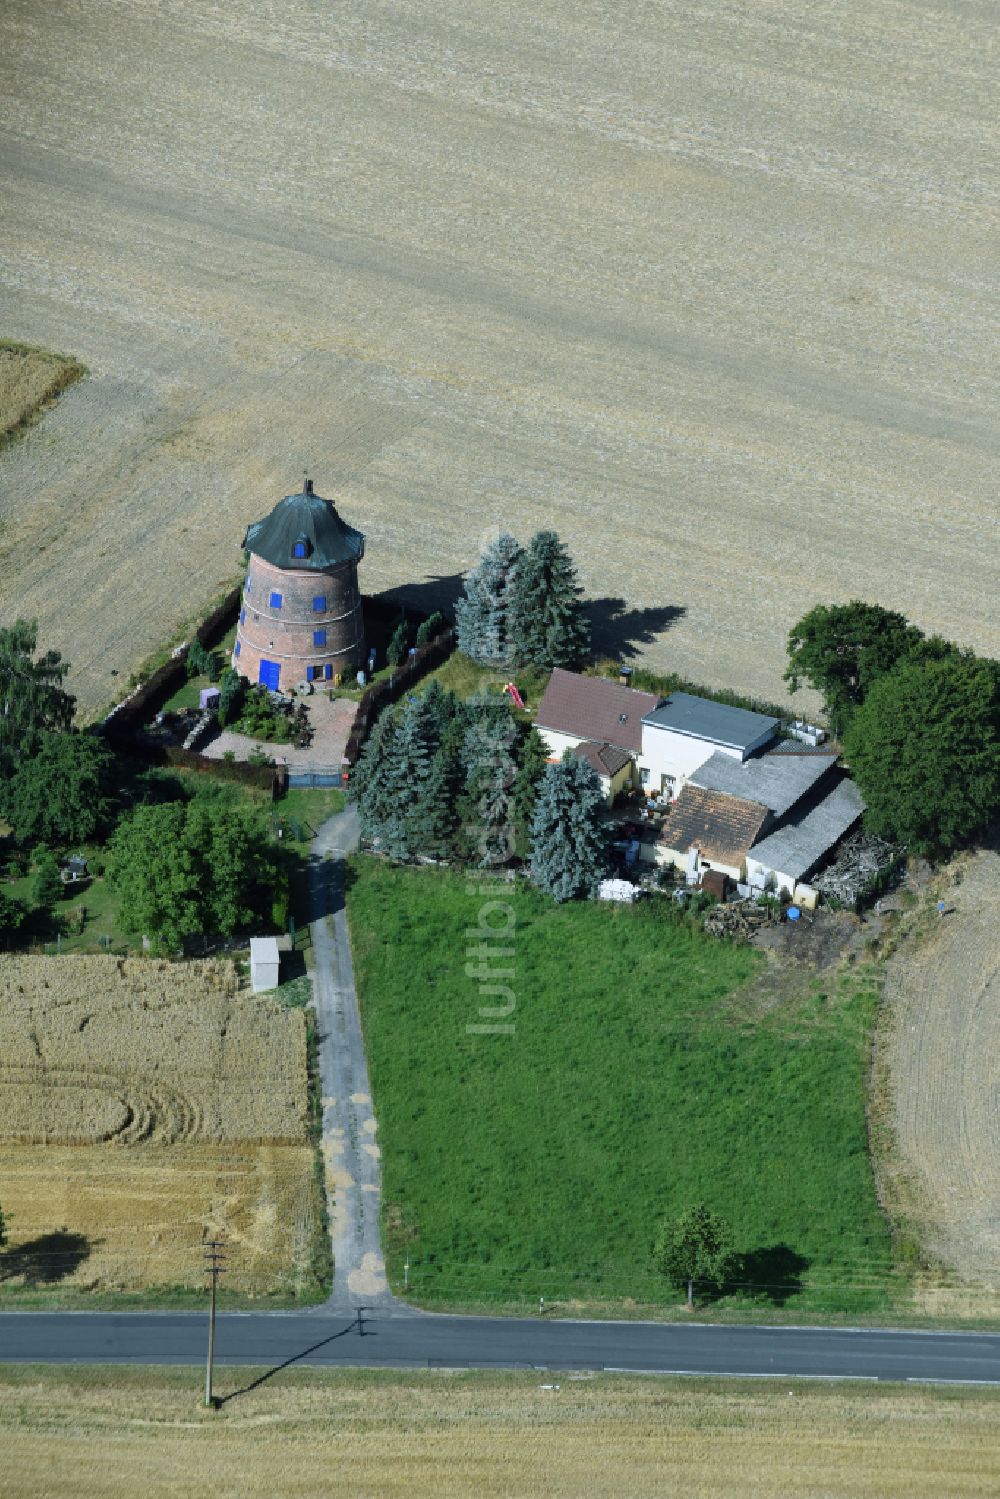 Naundorf aus der Vogelperspektive: Historische Turmwindmühle am Gehöft eines Bauernhofes am Rand von bestellten Feldern in Naundorf im Bundesland Sachsen